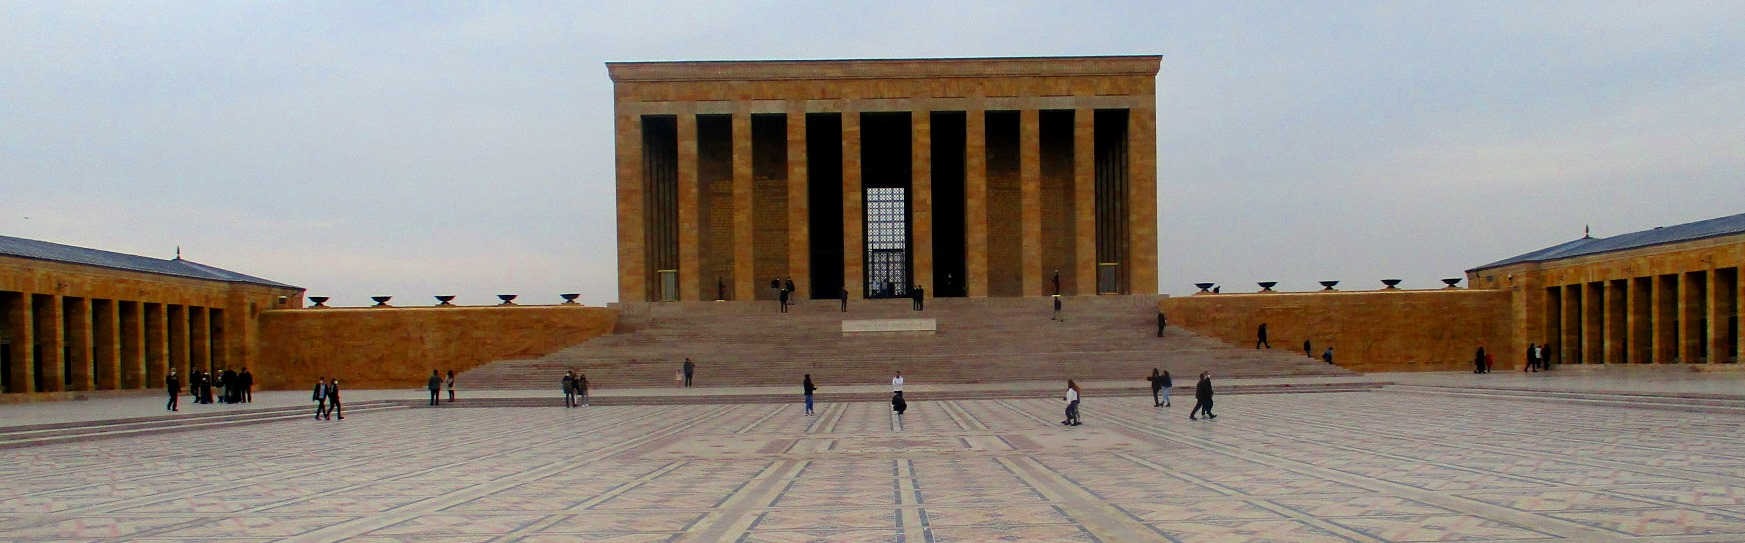 Анкара, мавзолей Ататюрка